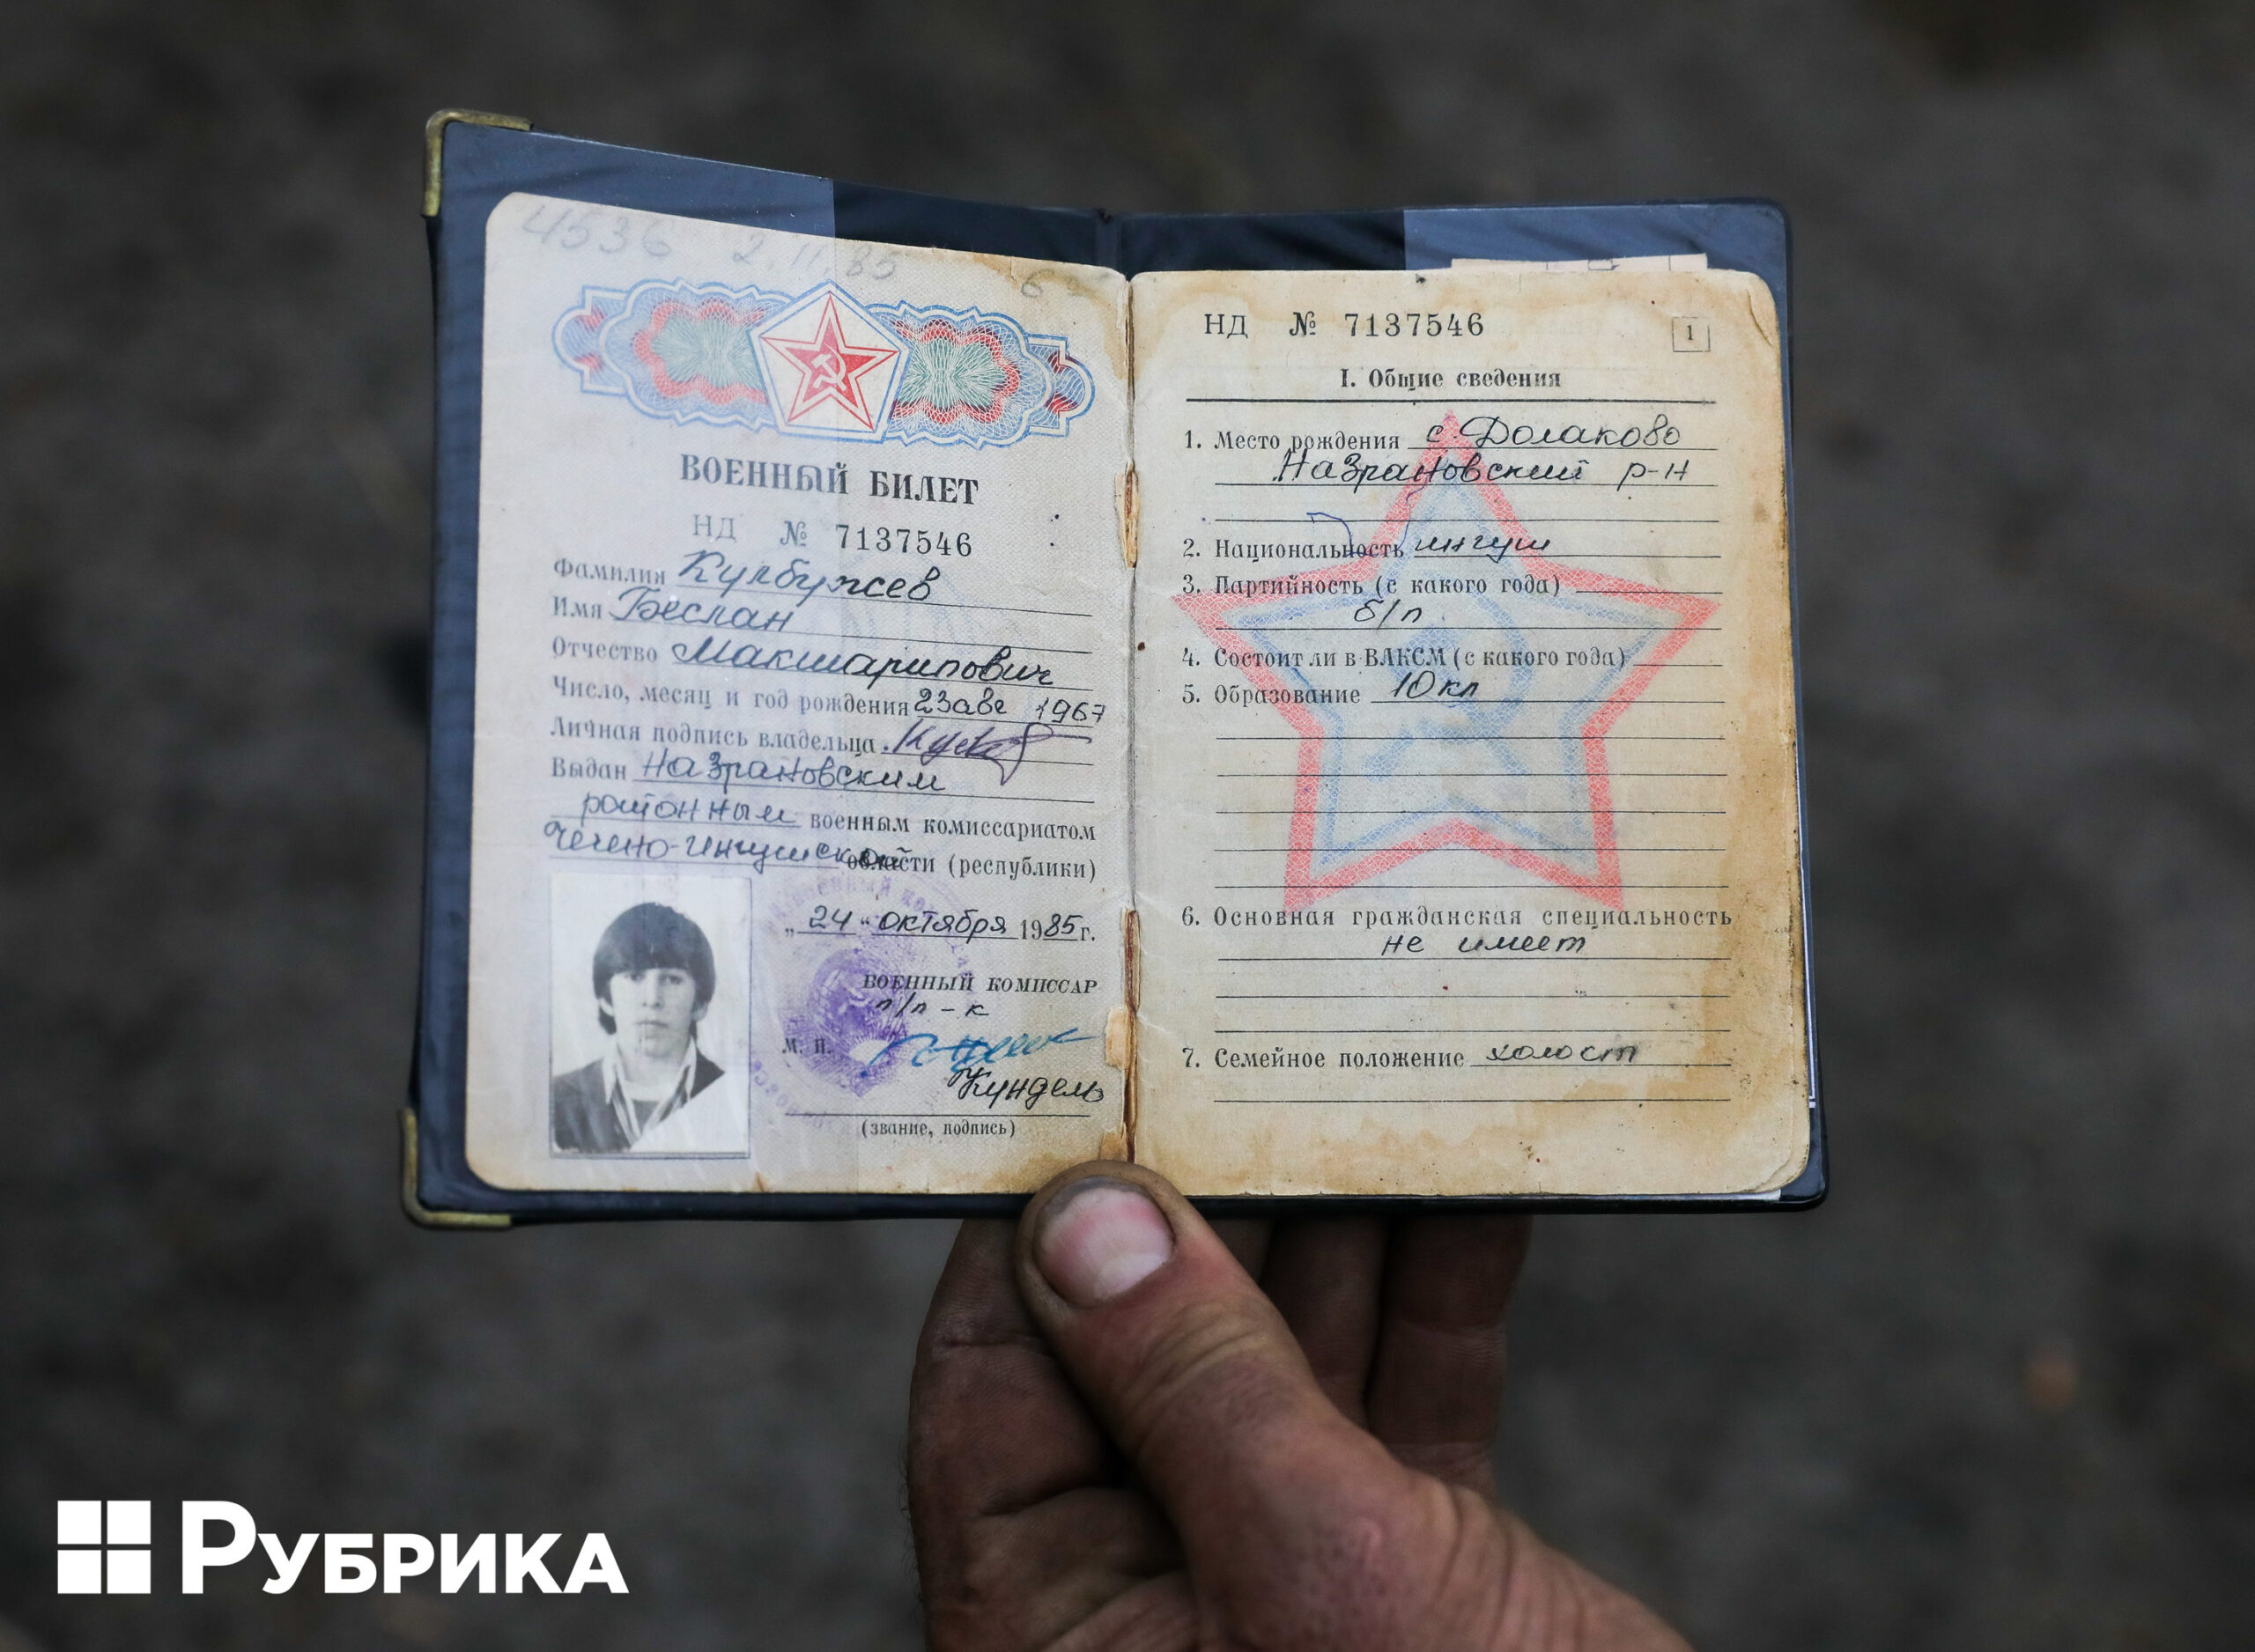 Як виглядає звільнена Харківщина: дорога в деокупацію та мертві вороги